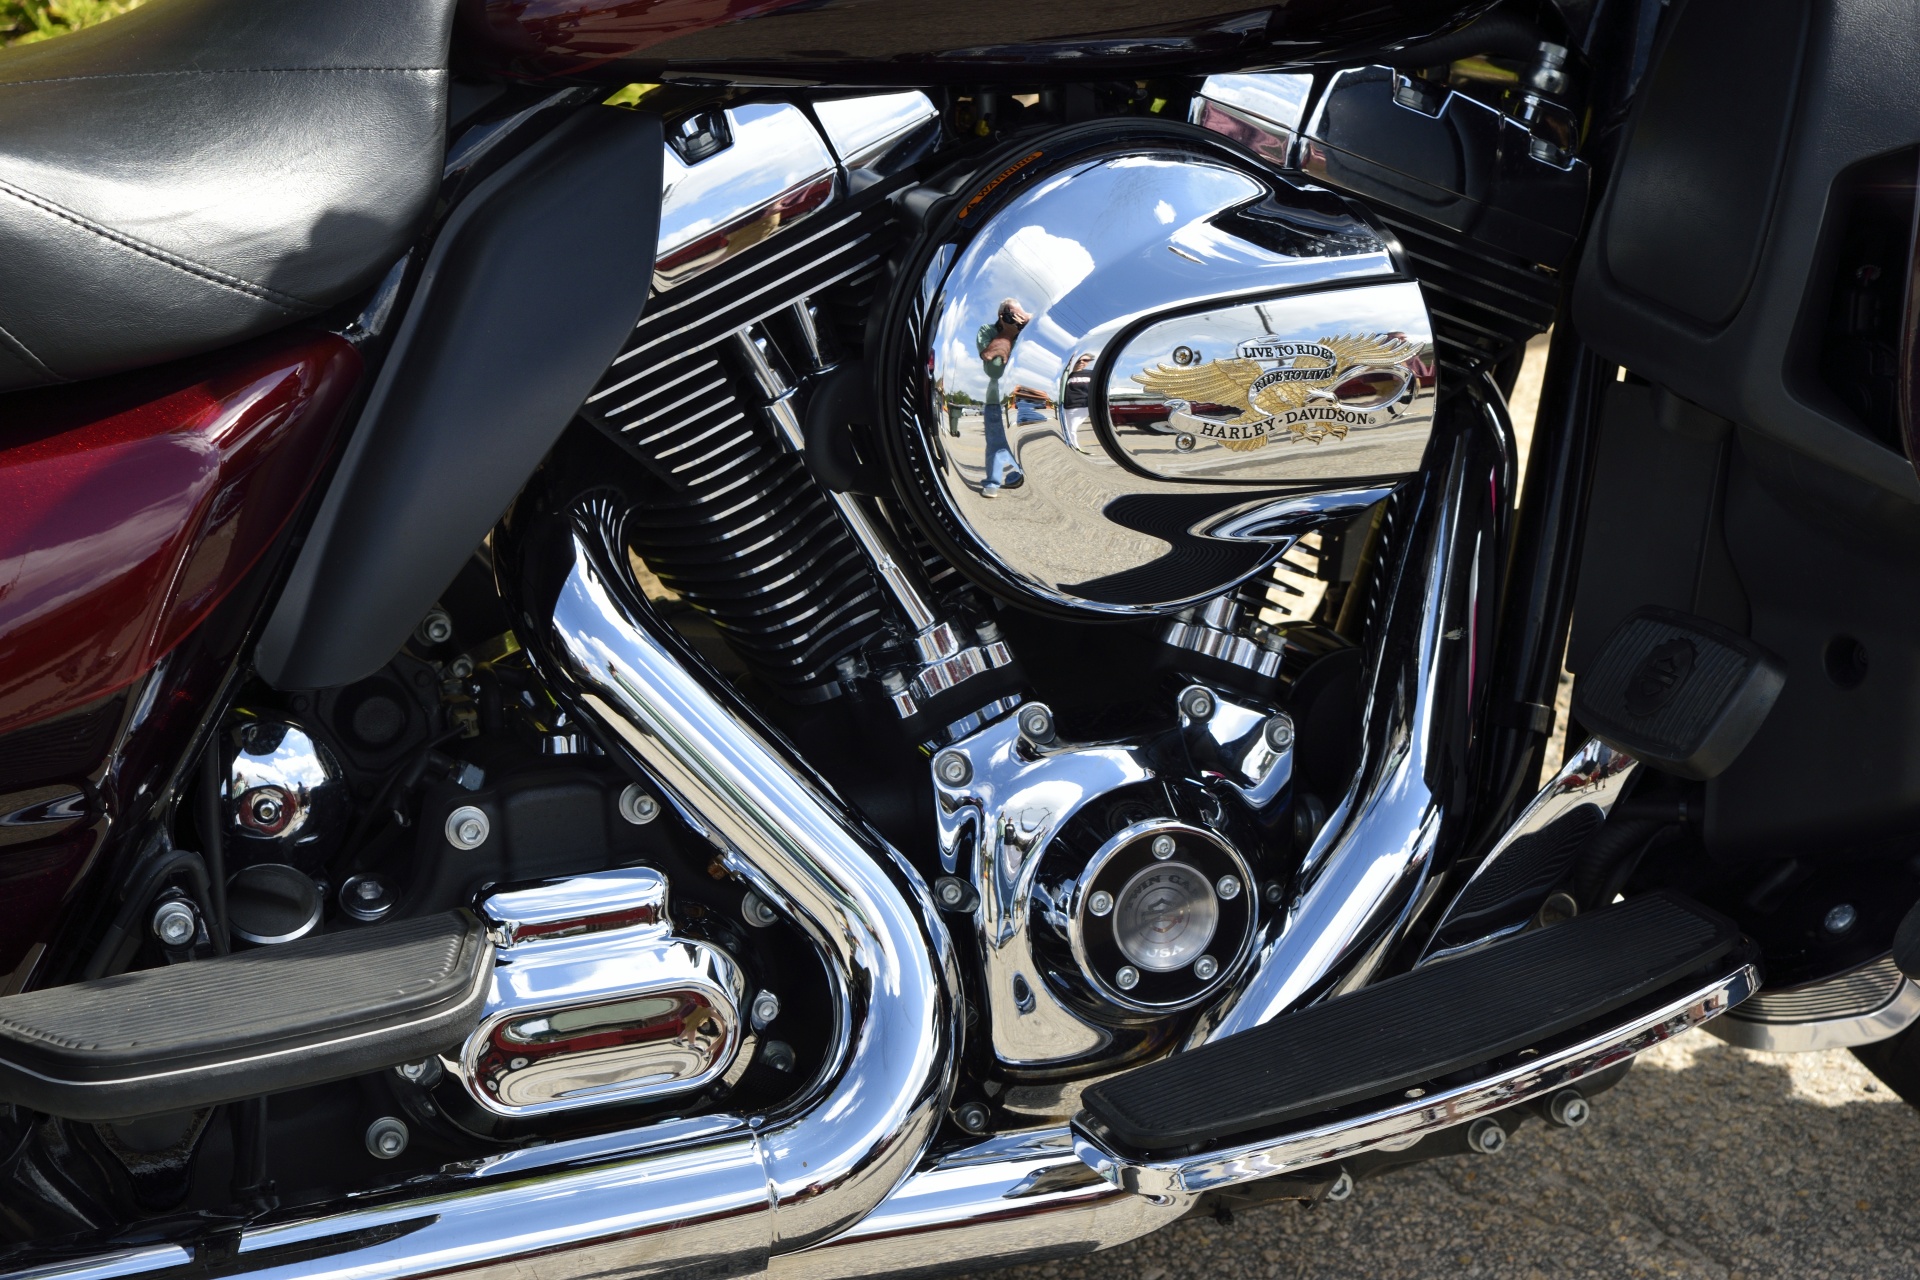 Motorcycle engine background